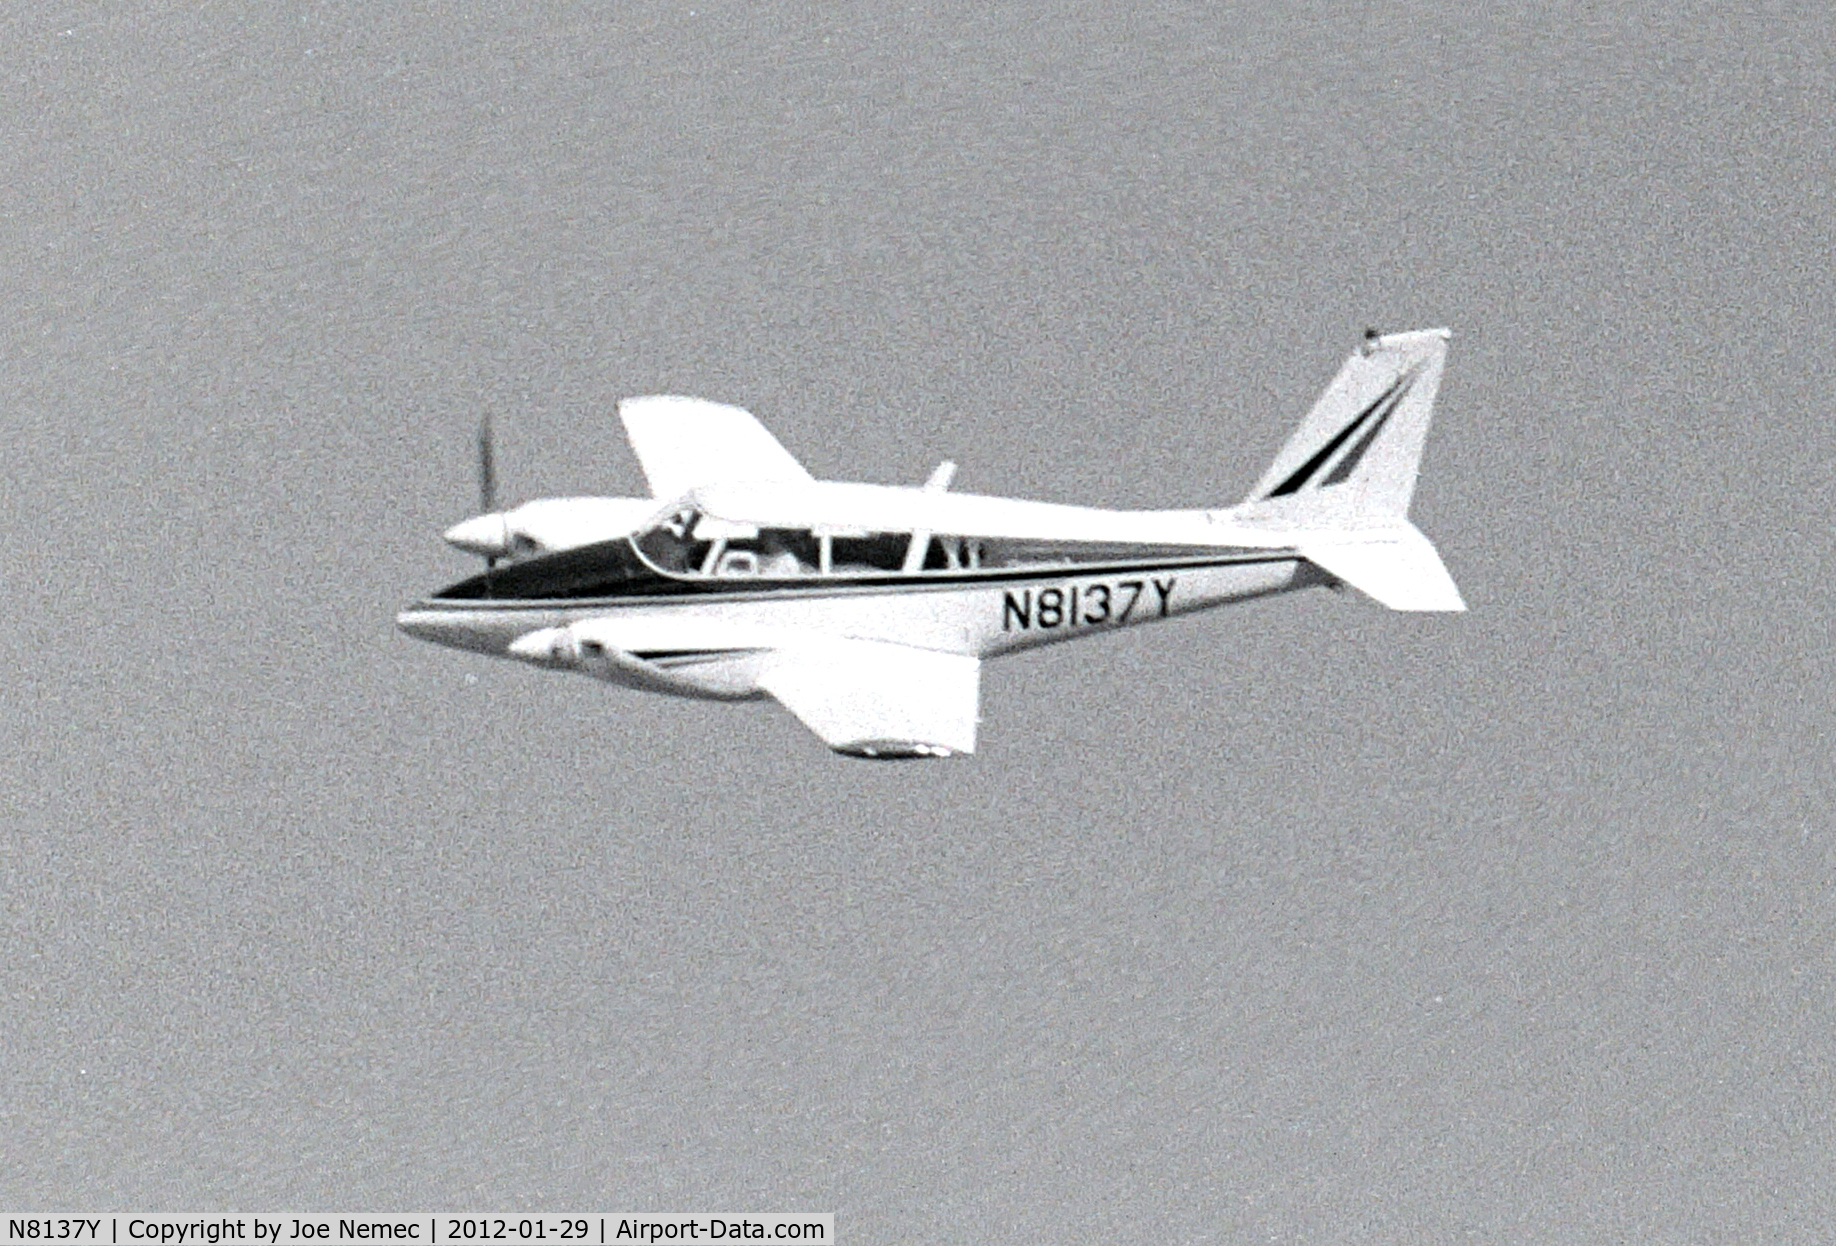 N8137Y, 1966 Piper PA-30 Twin Comanche Twin Comanche C/N 30-1248, In Flight Photo B&W 1960s